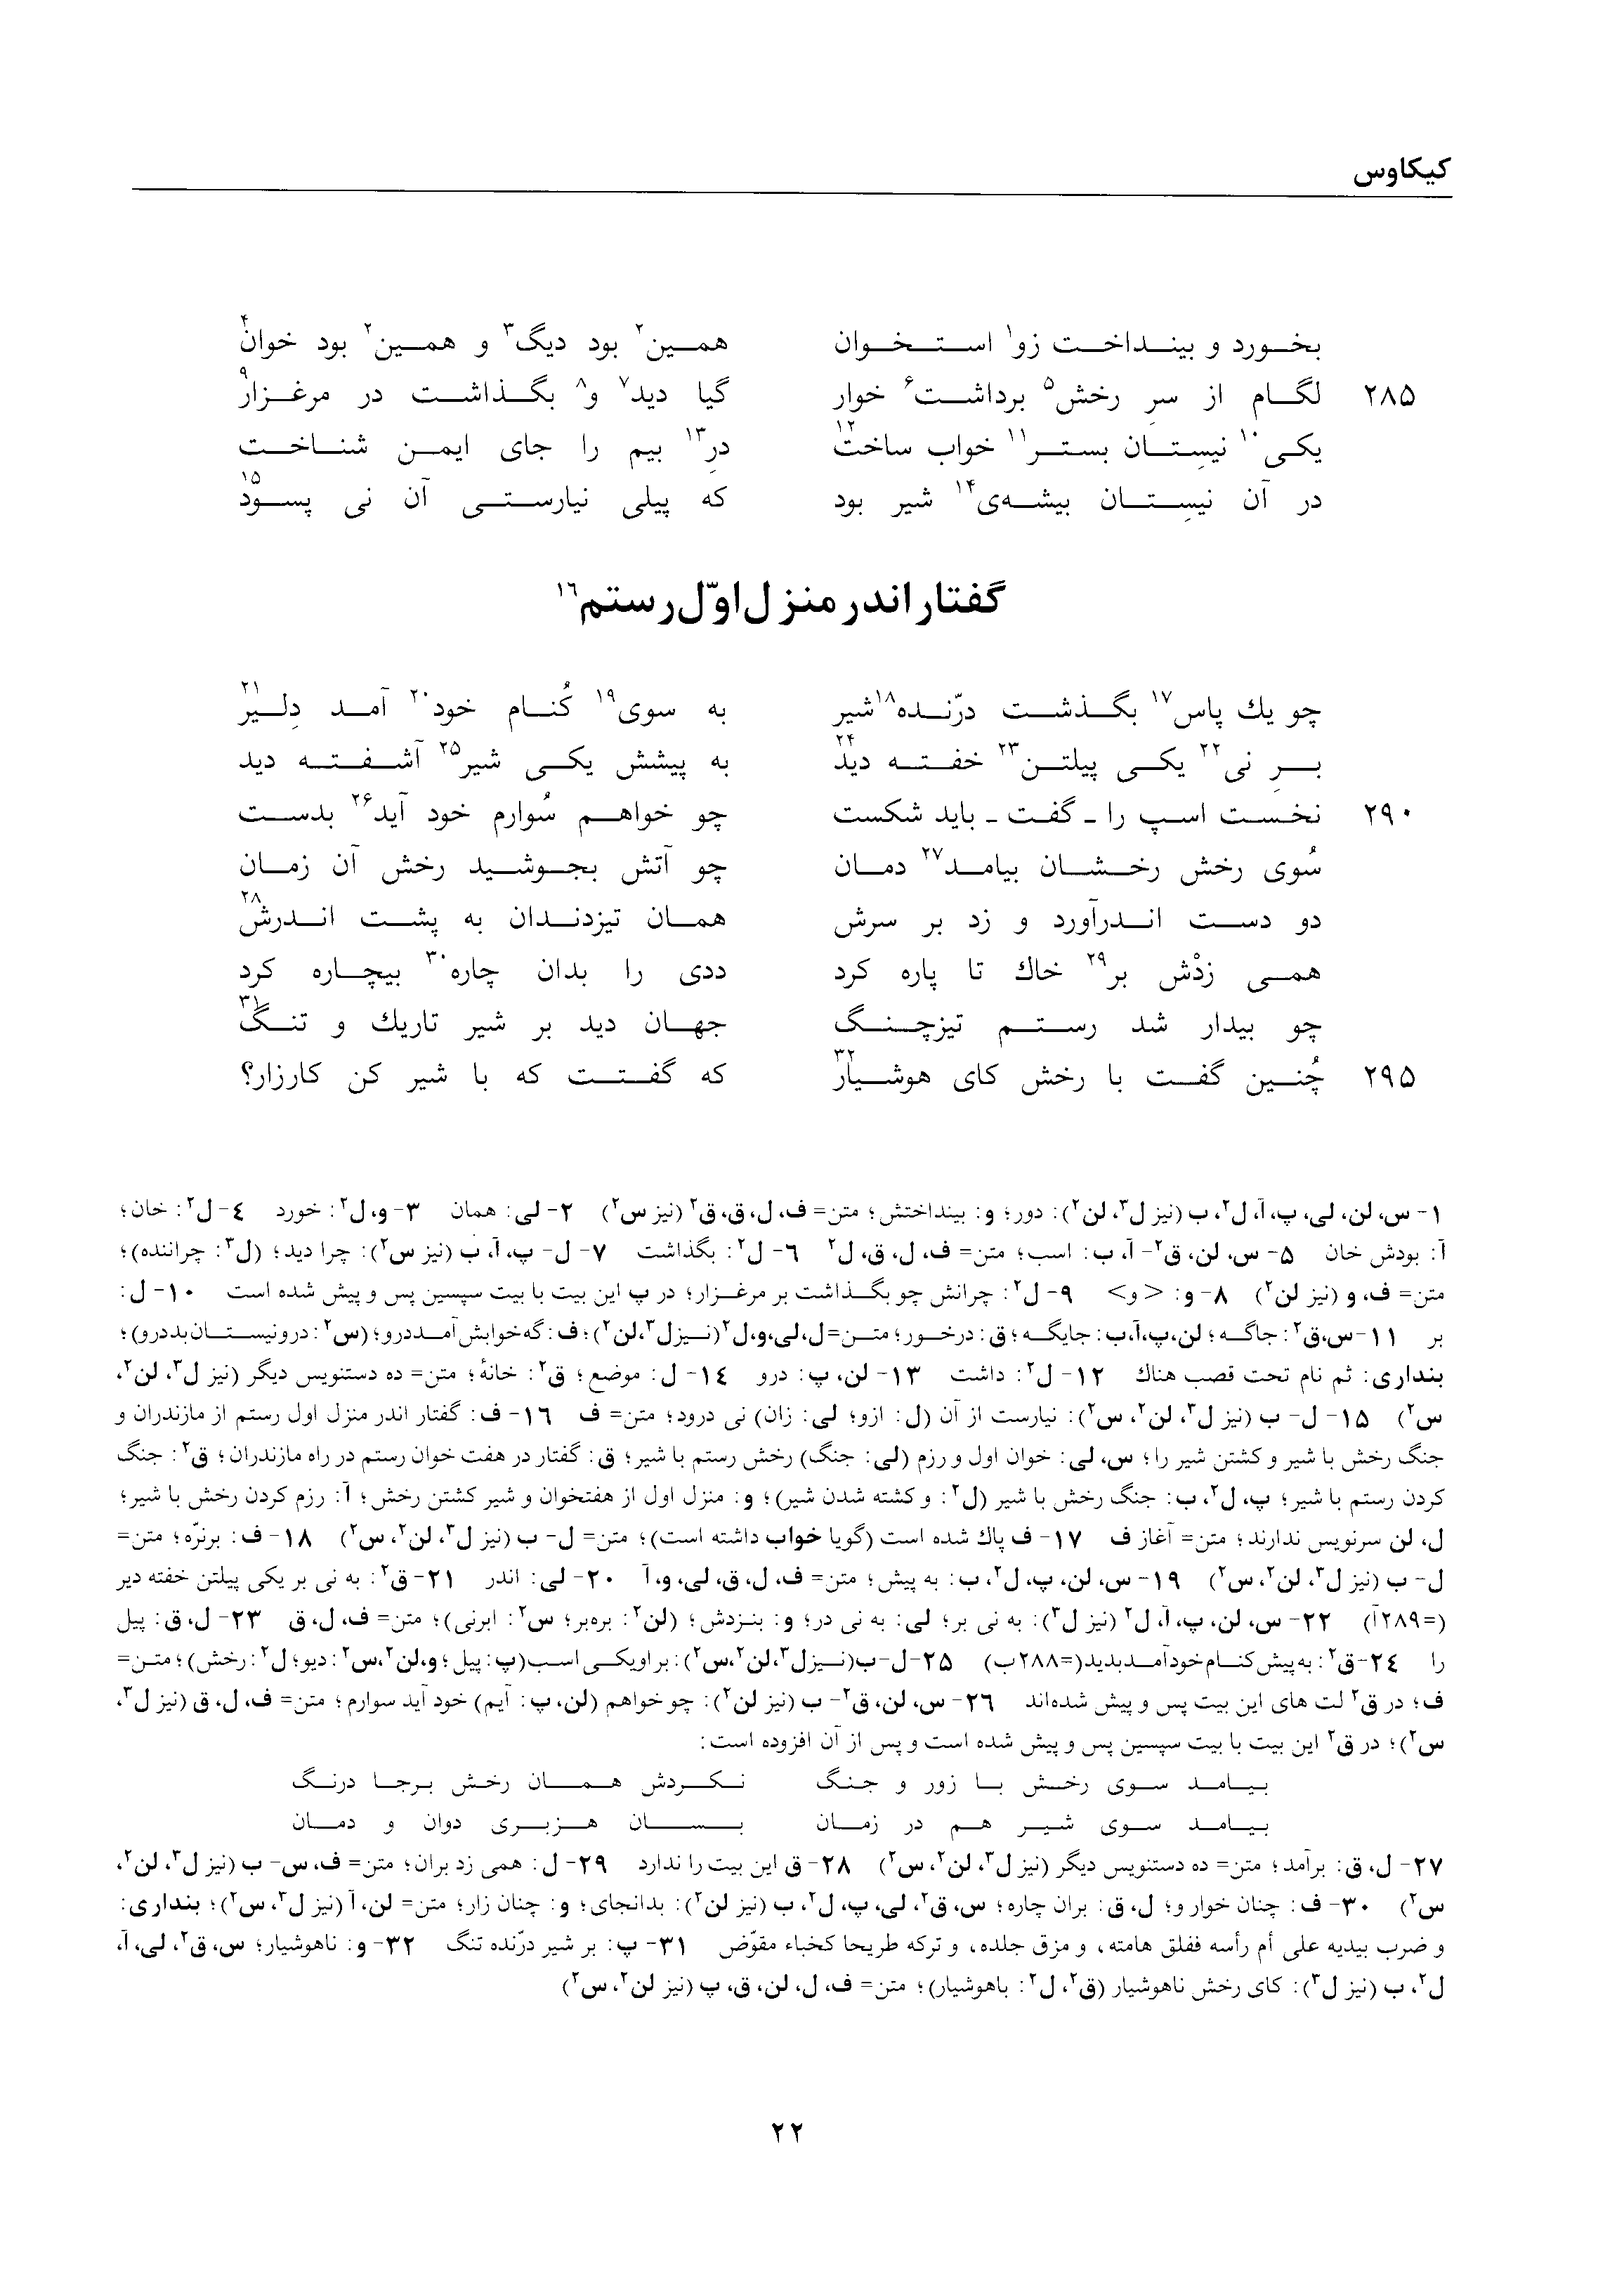 vol. 2, p. 22